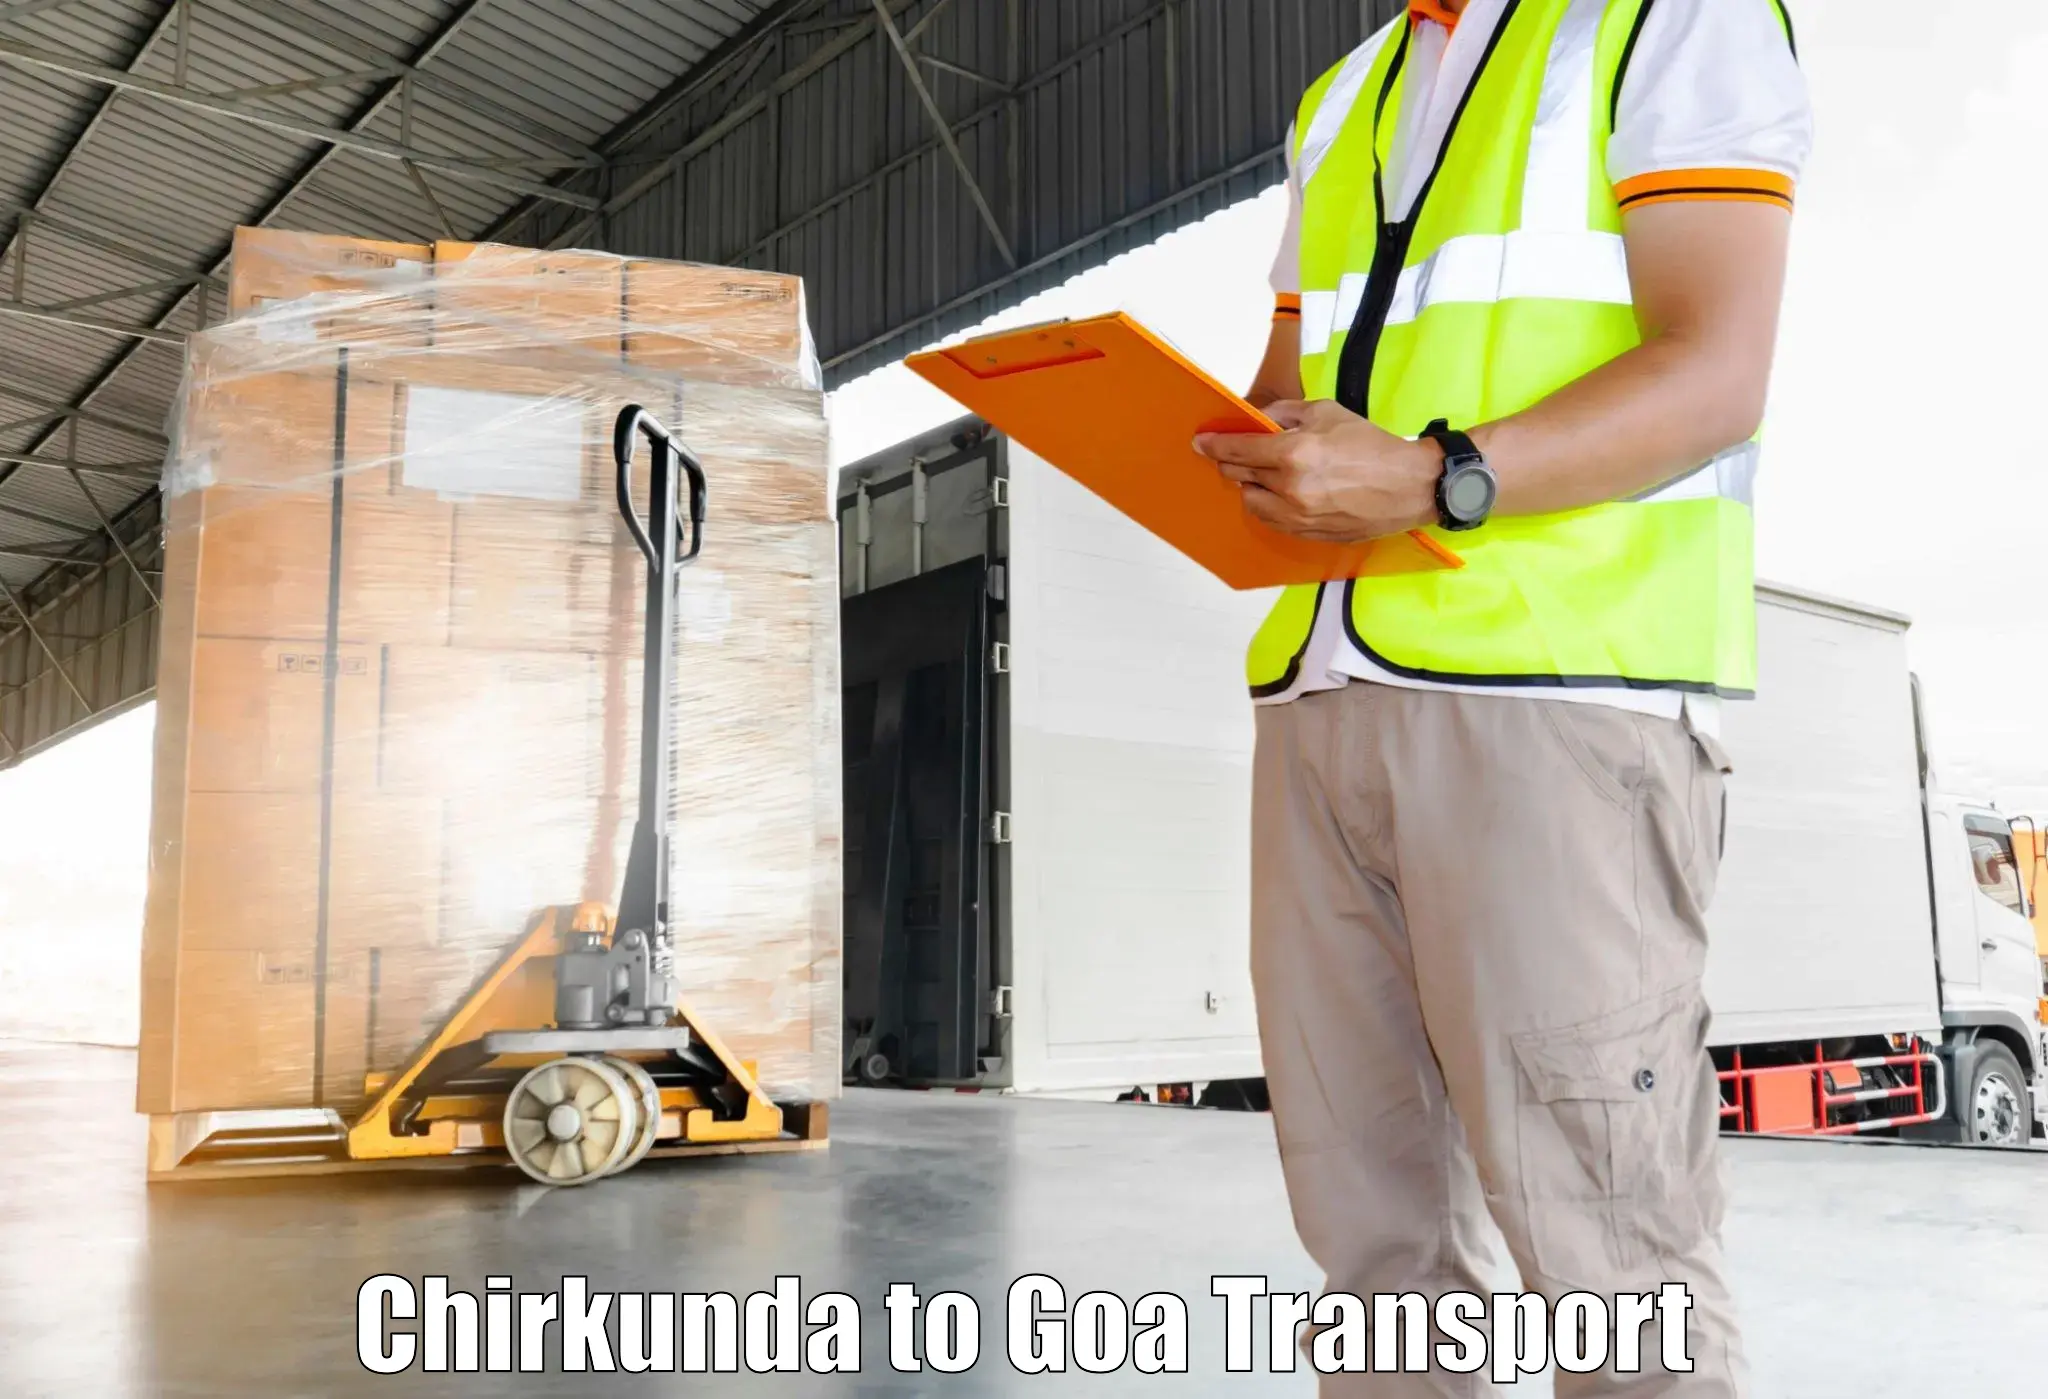 Transport services Chirkunda to Mormugao Port